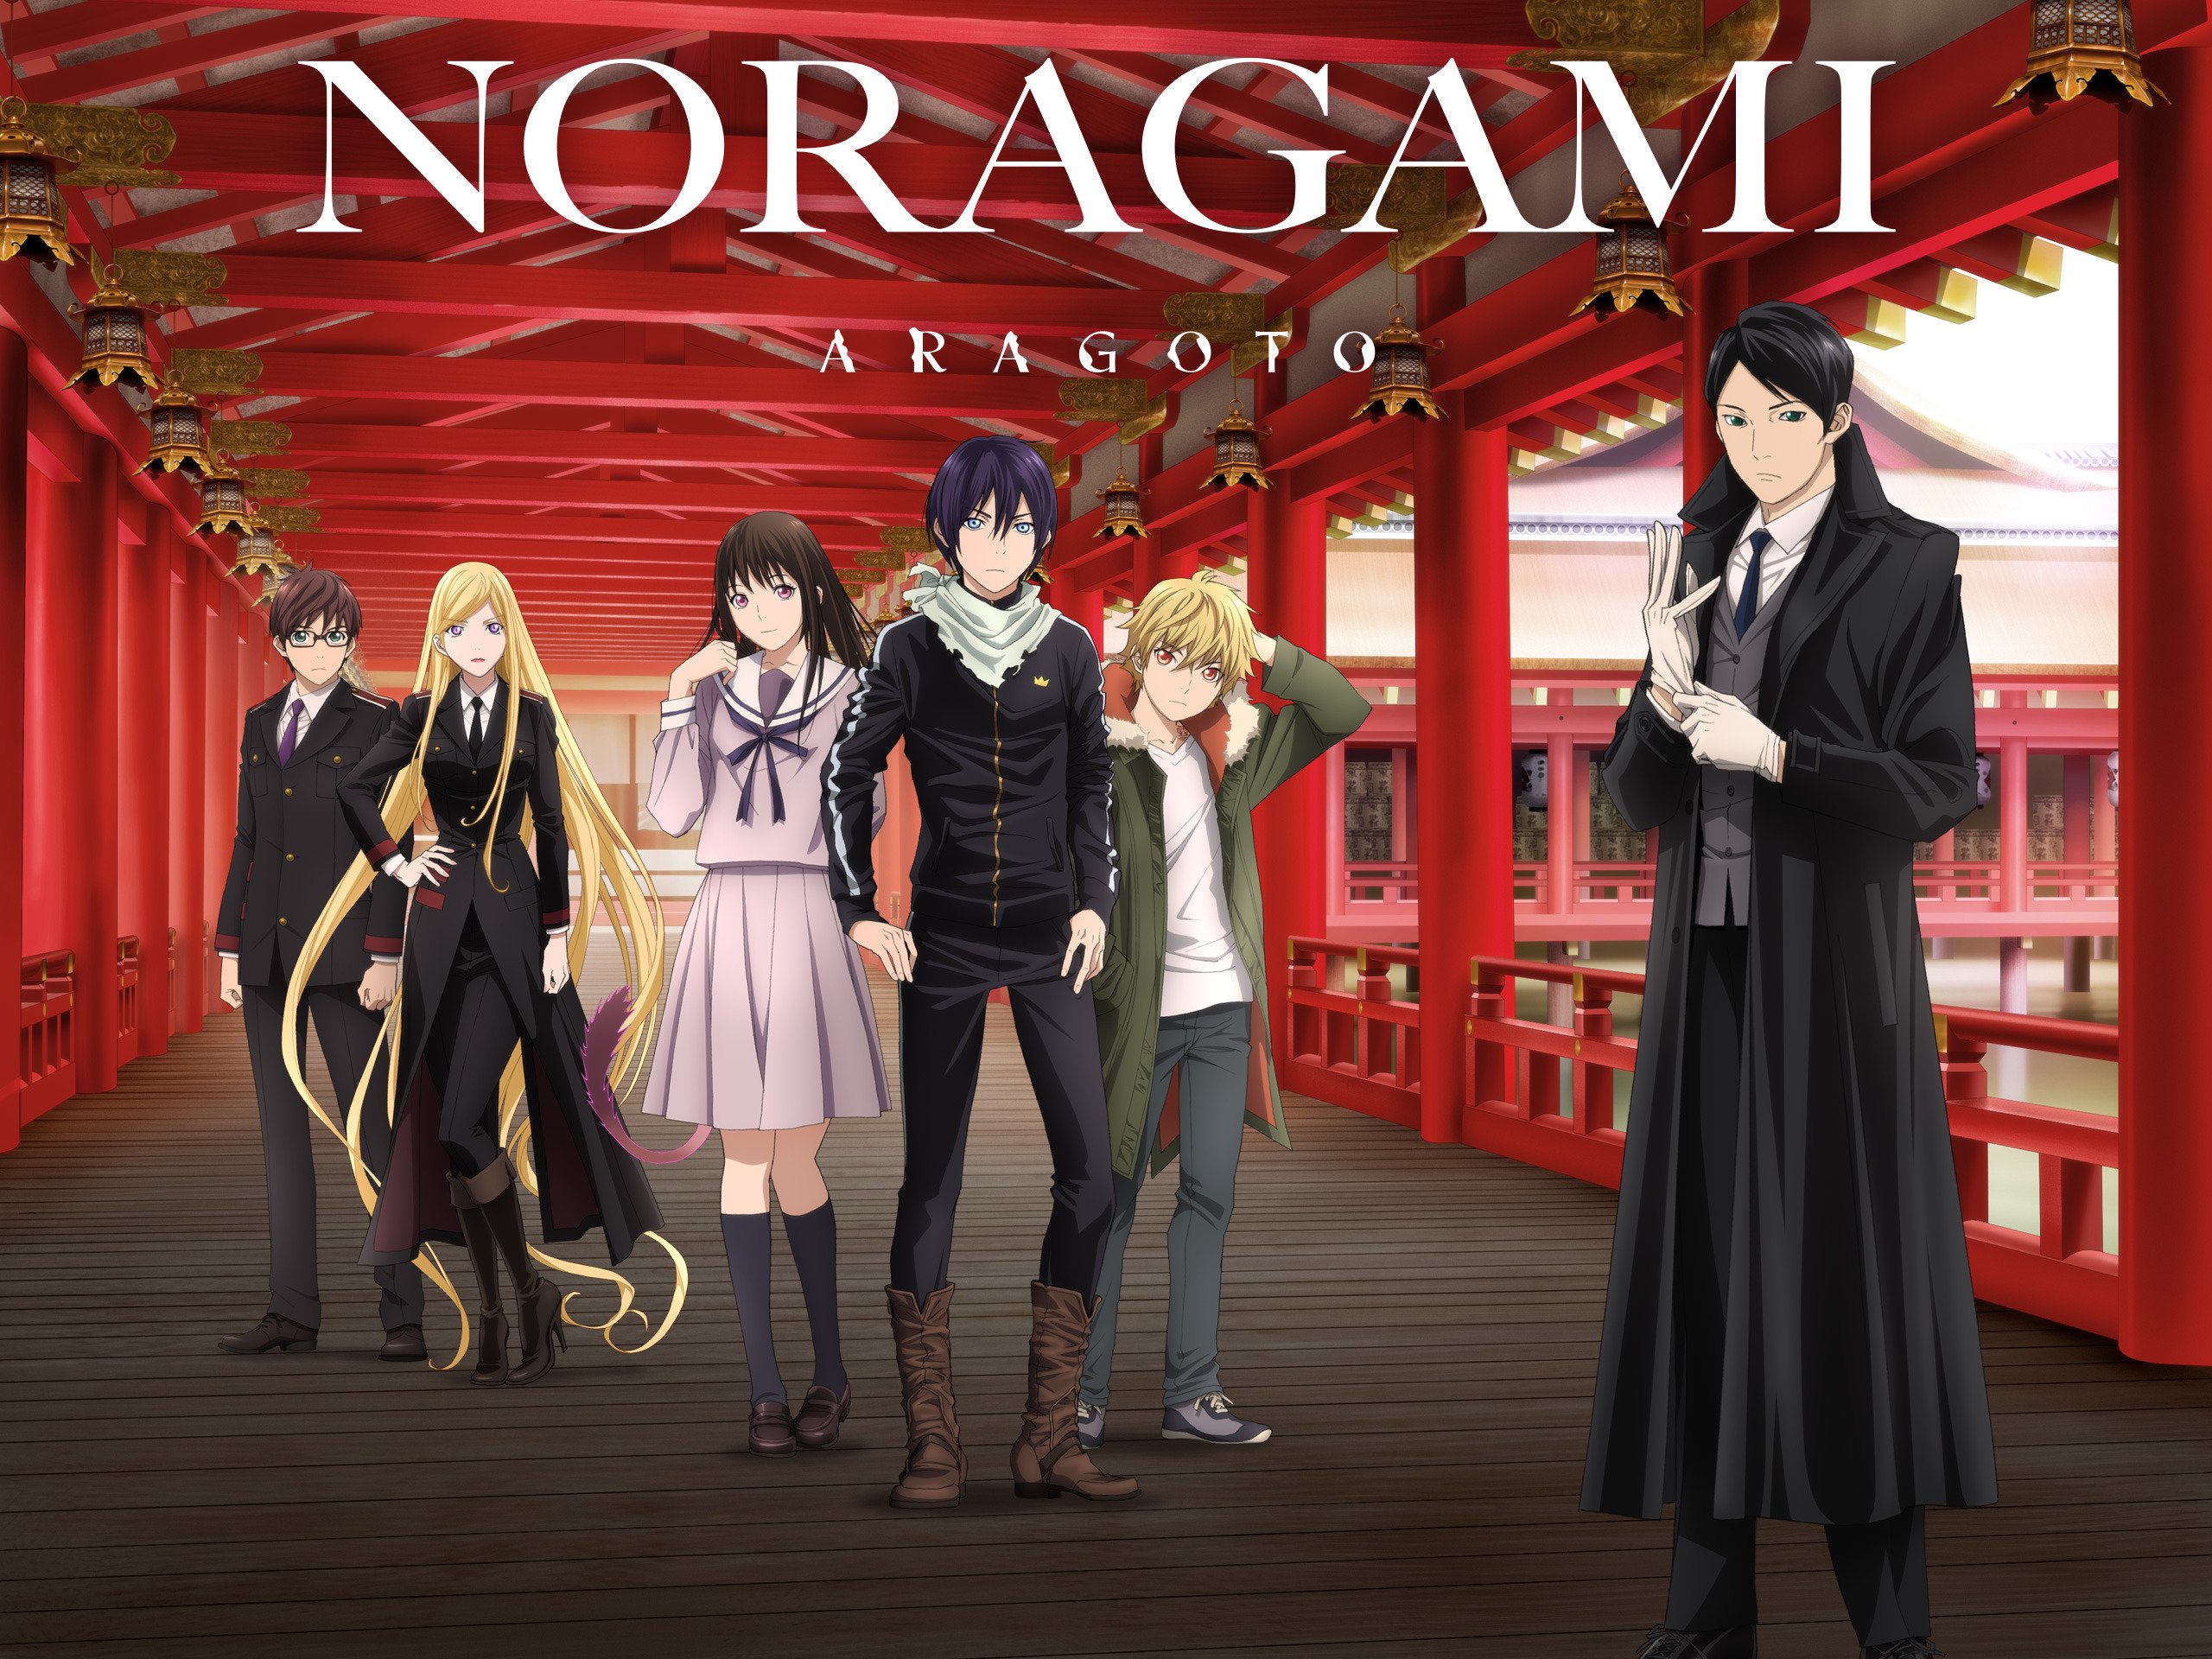 تحميل حلقات أنمي Noragami Aragoto برابط واحد أنمي أبلودر Animeuploader